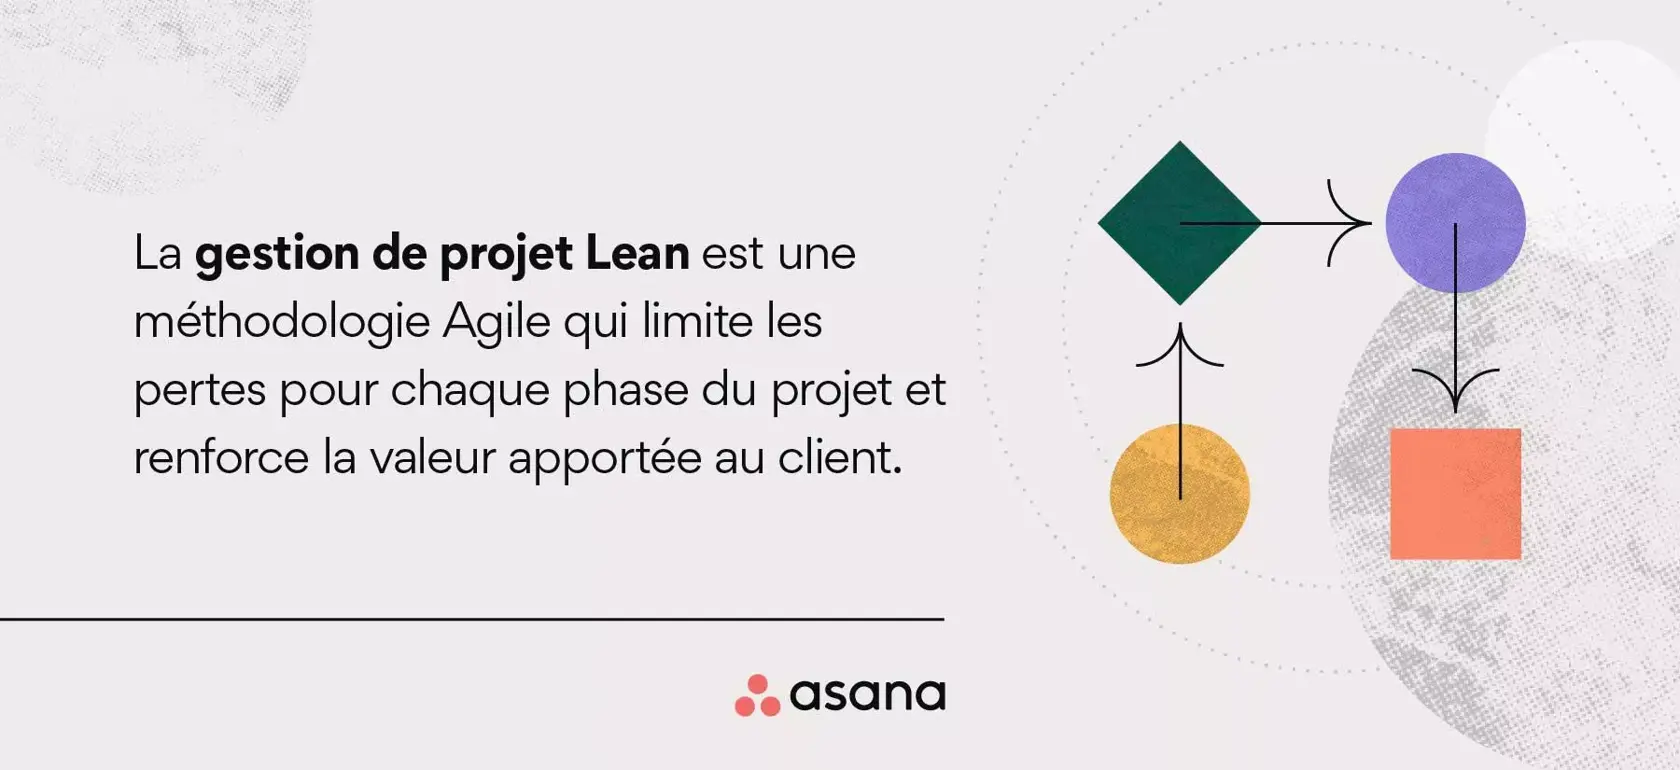 Définition de la gestion de projet Lean